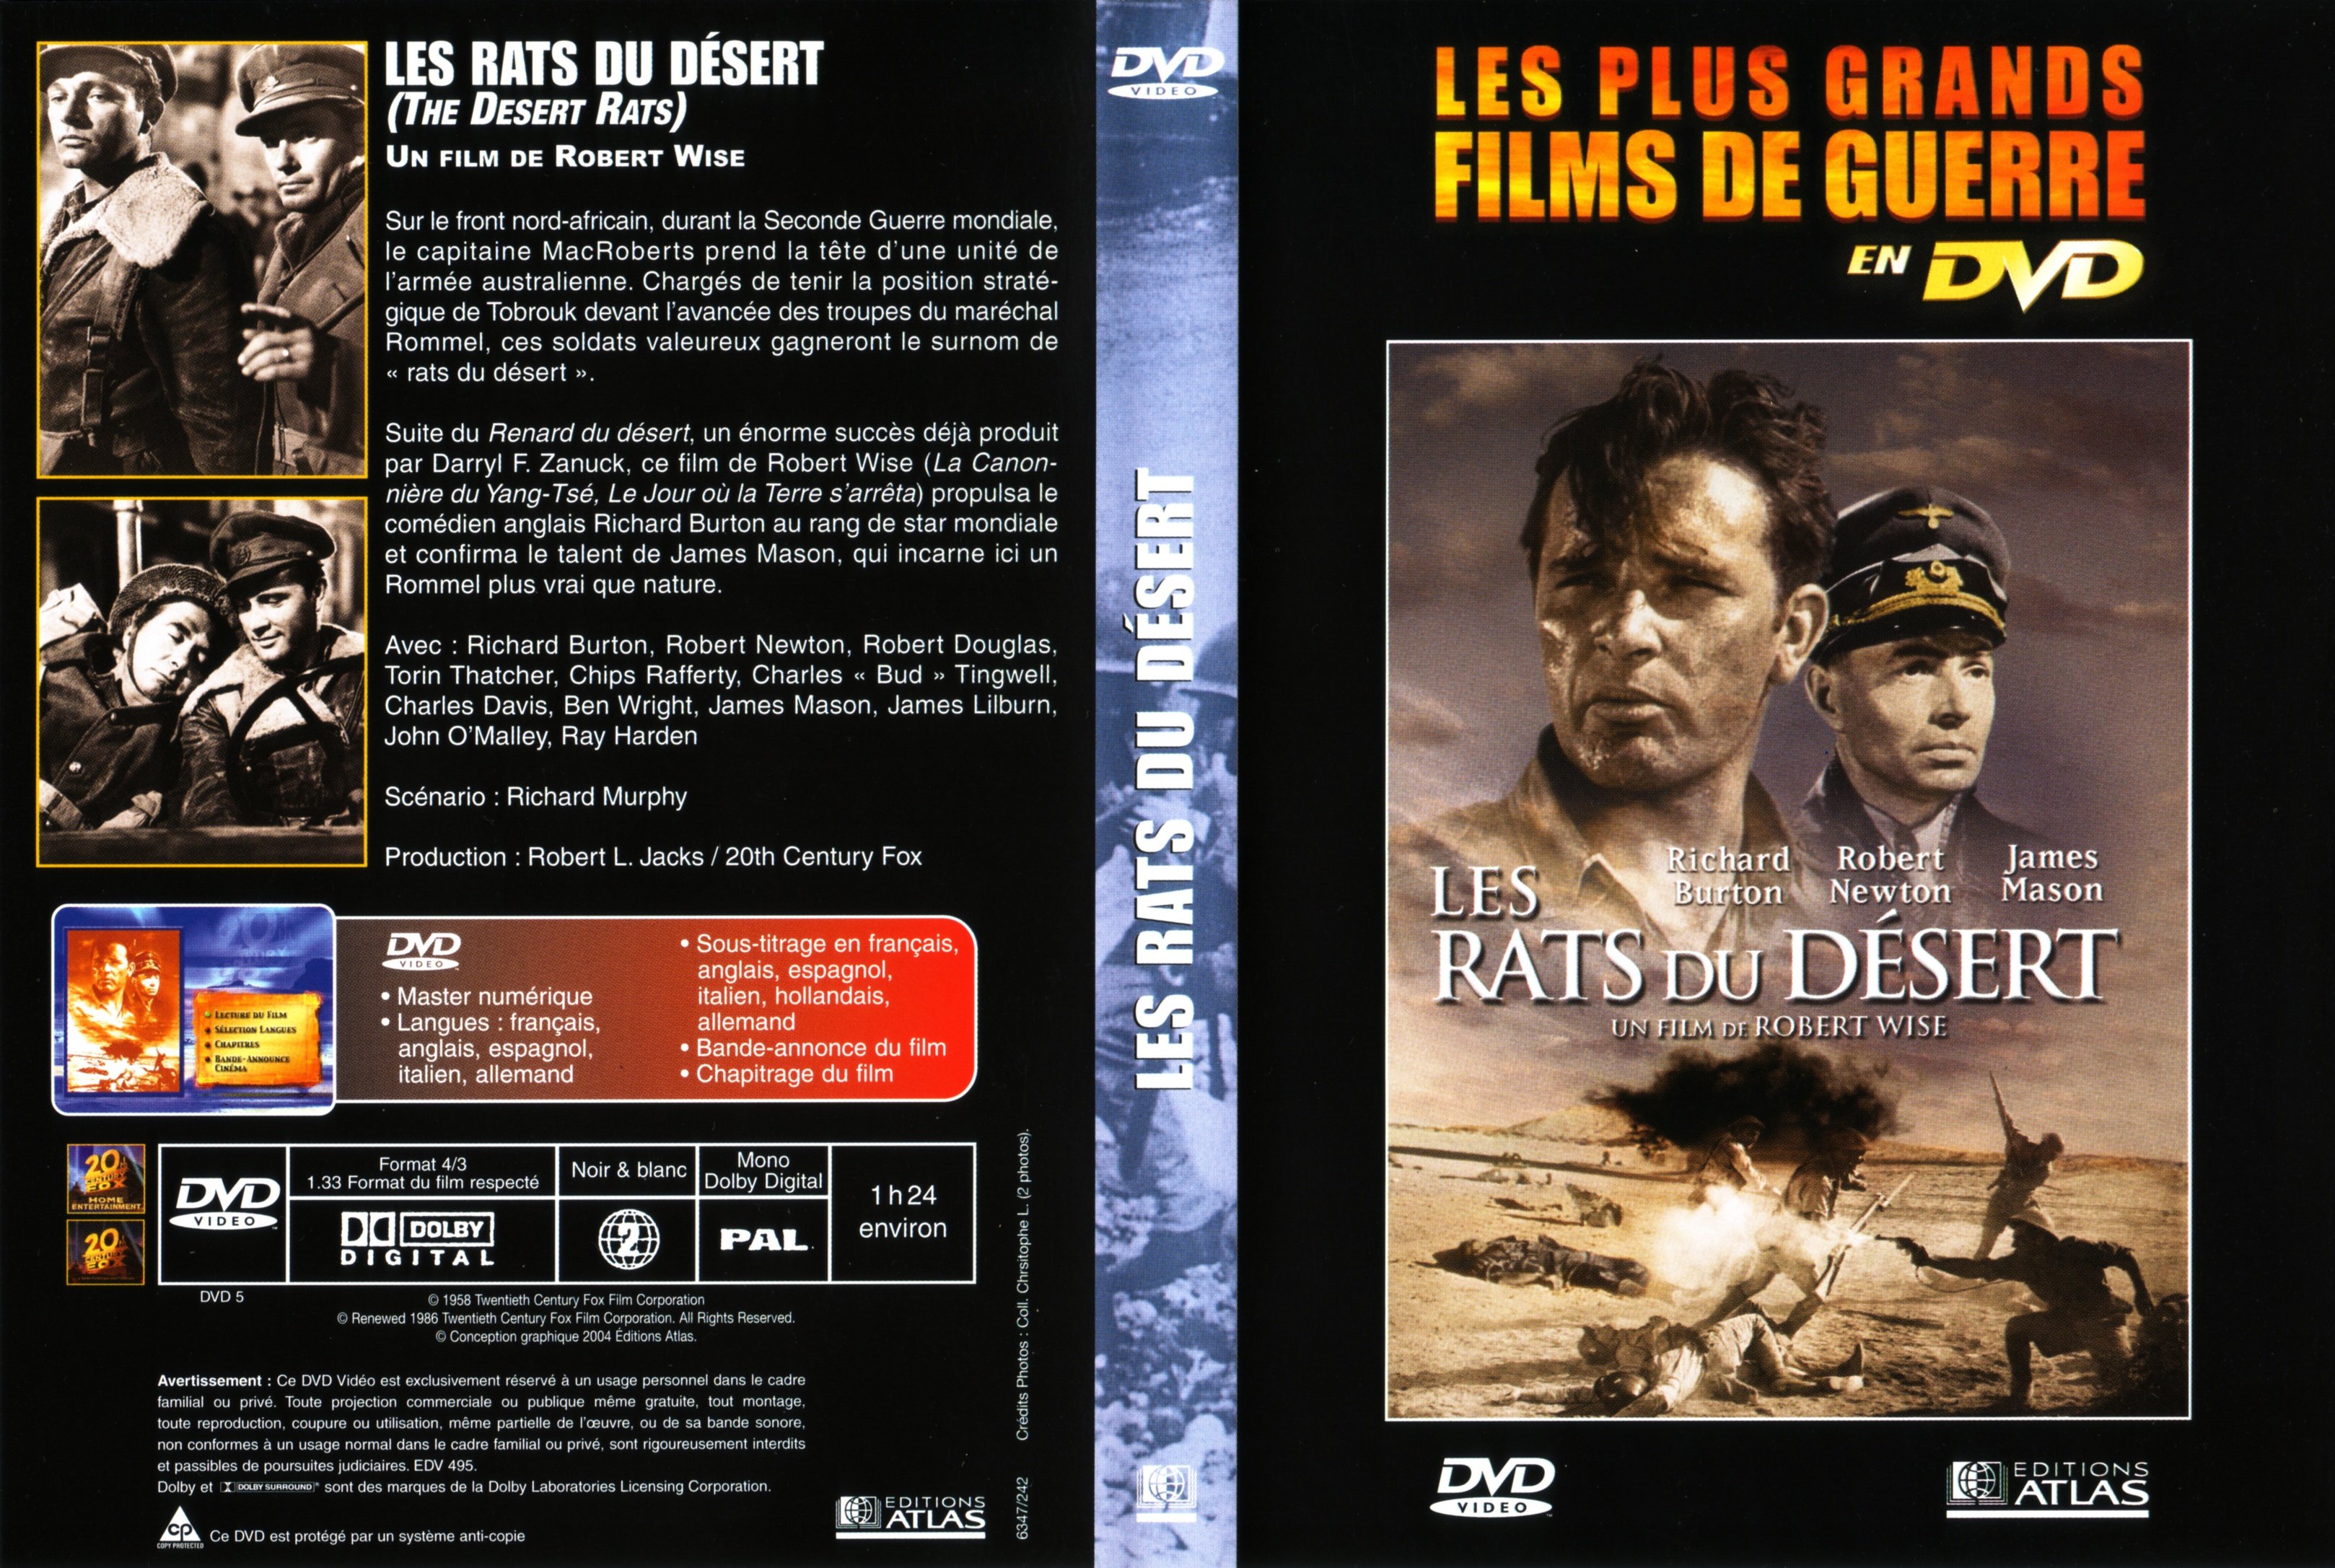 Jaquette DVD Les rats du dsert